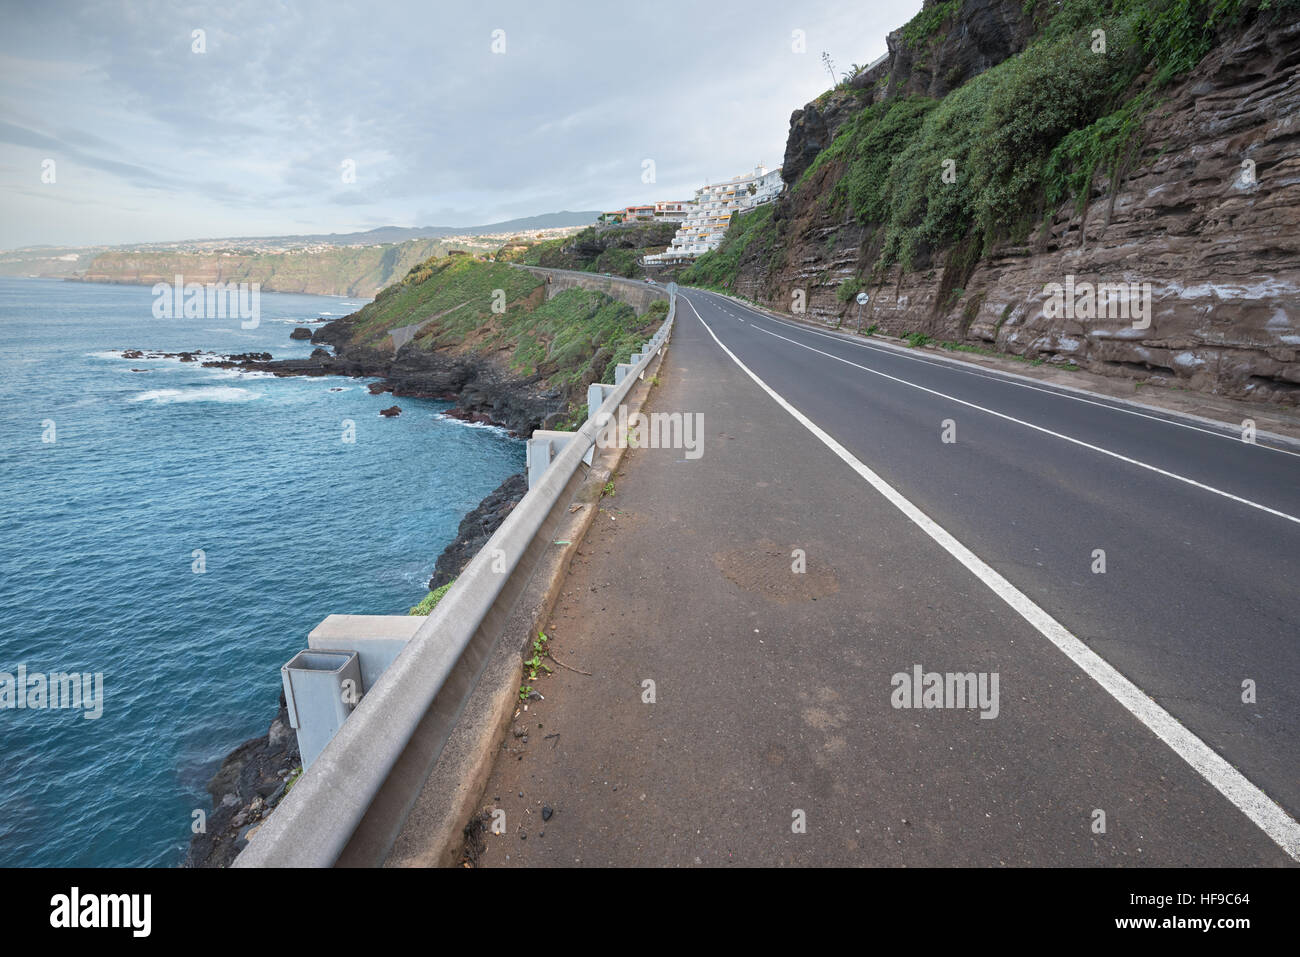 Coastline road in Puerto de la Cruz, tenerife, Canary islands, Spain. Stock Photo